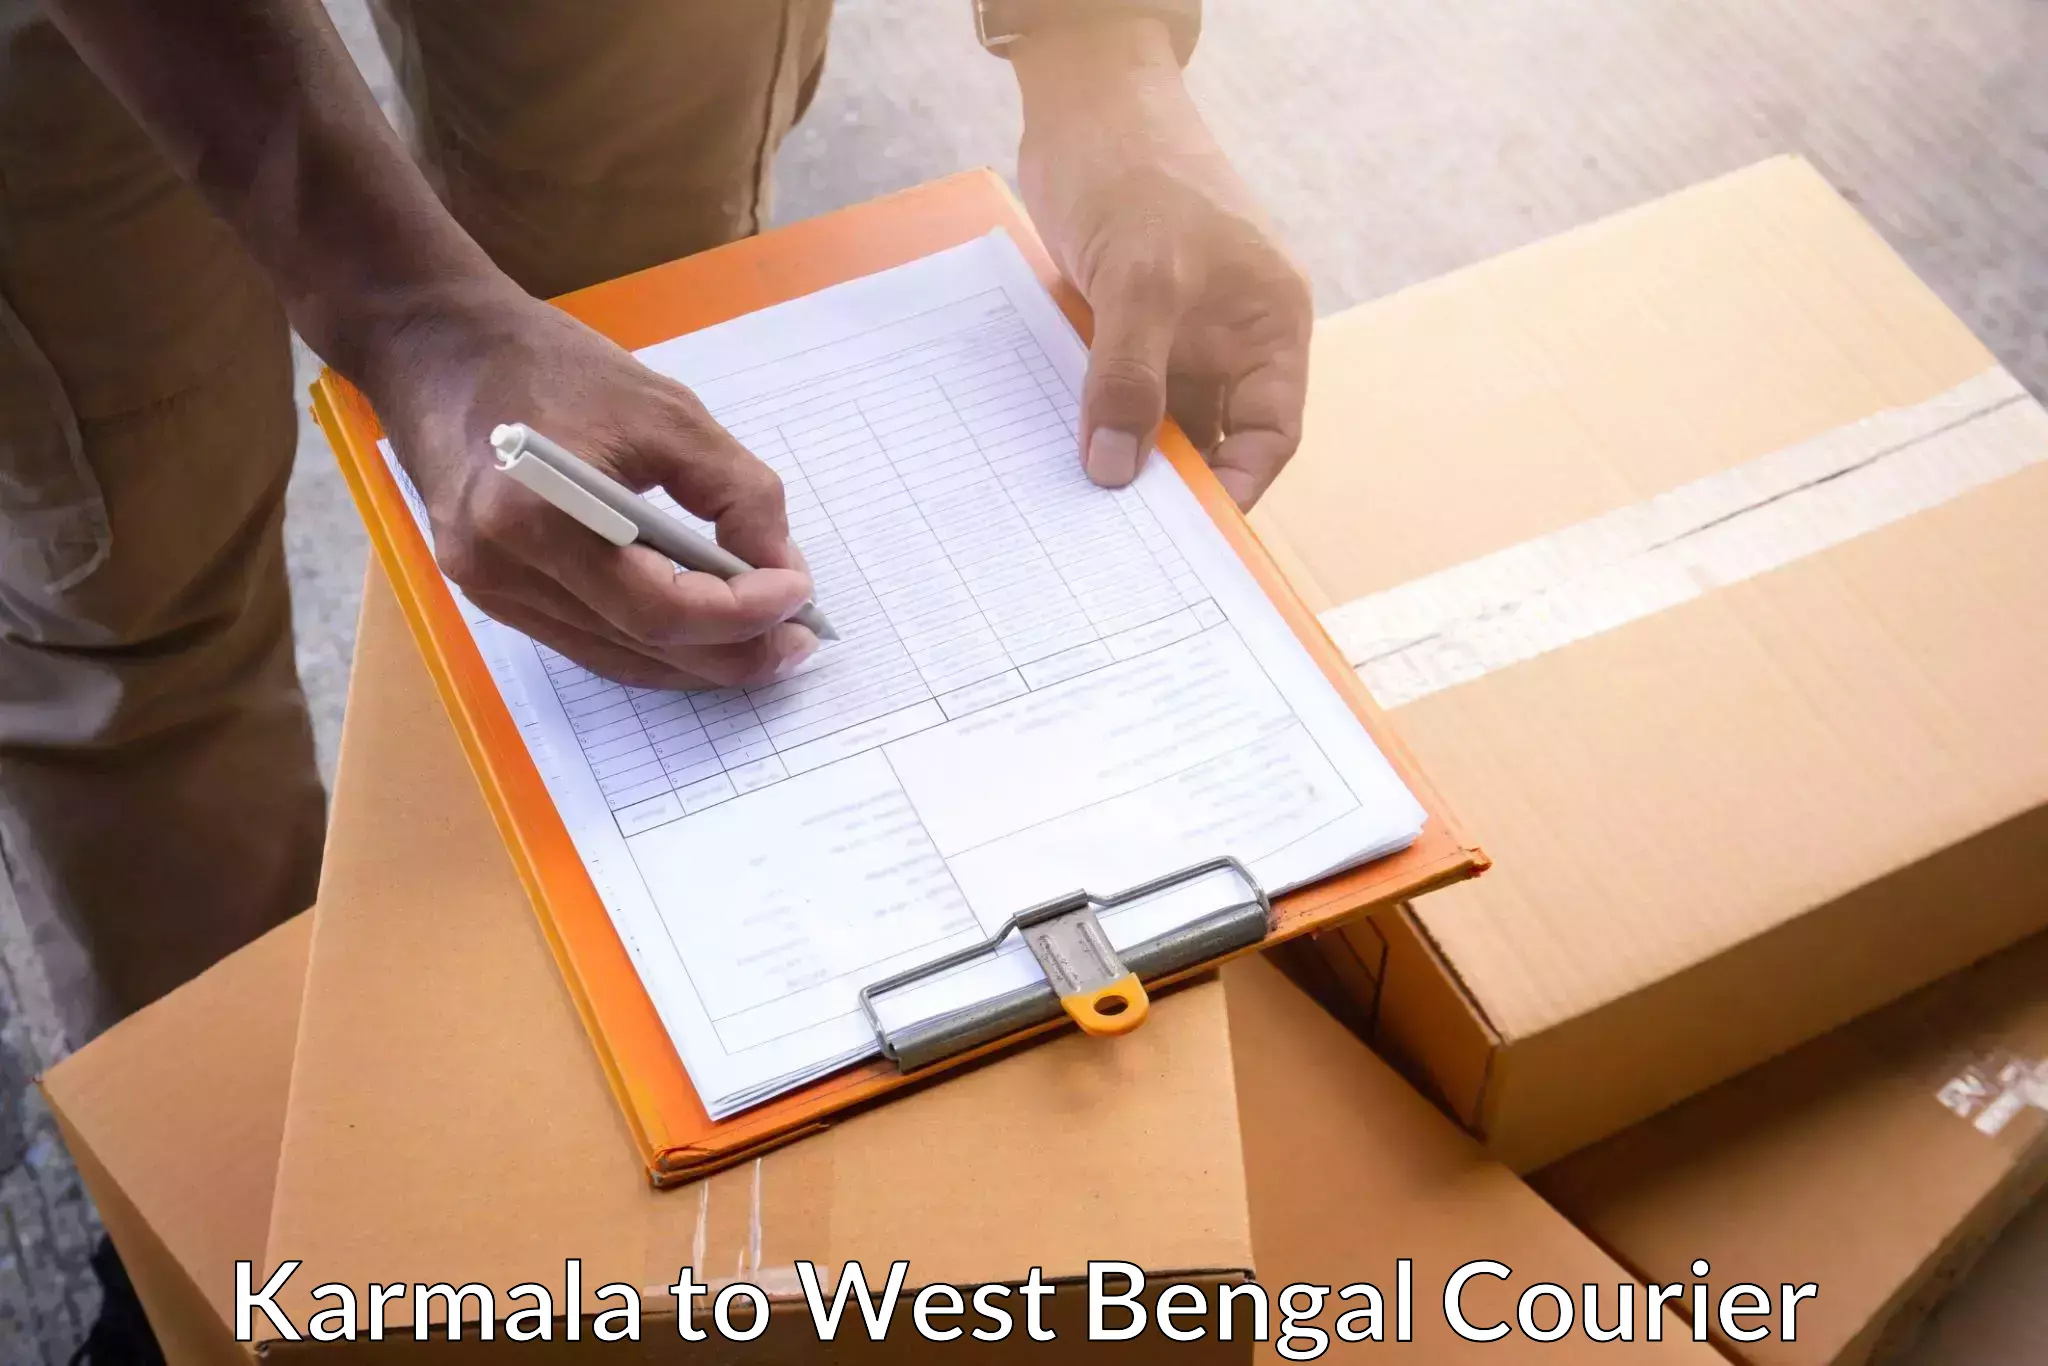 Urgent courier needs Karmala to Panjipara